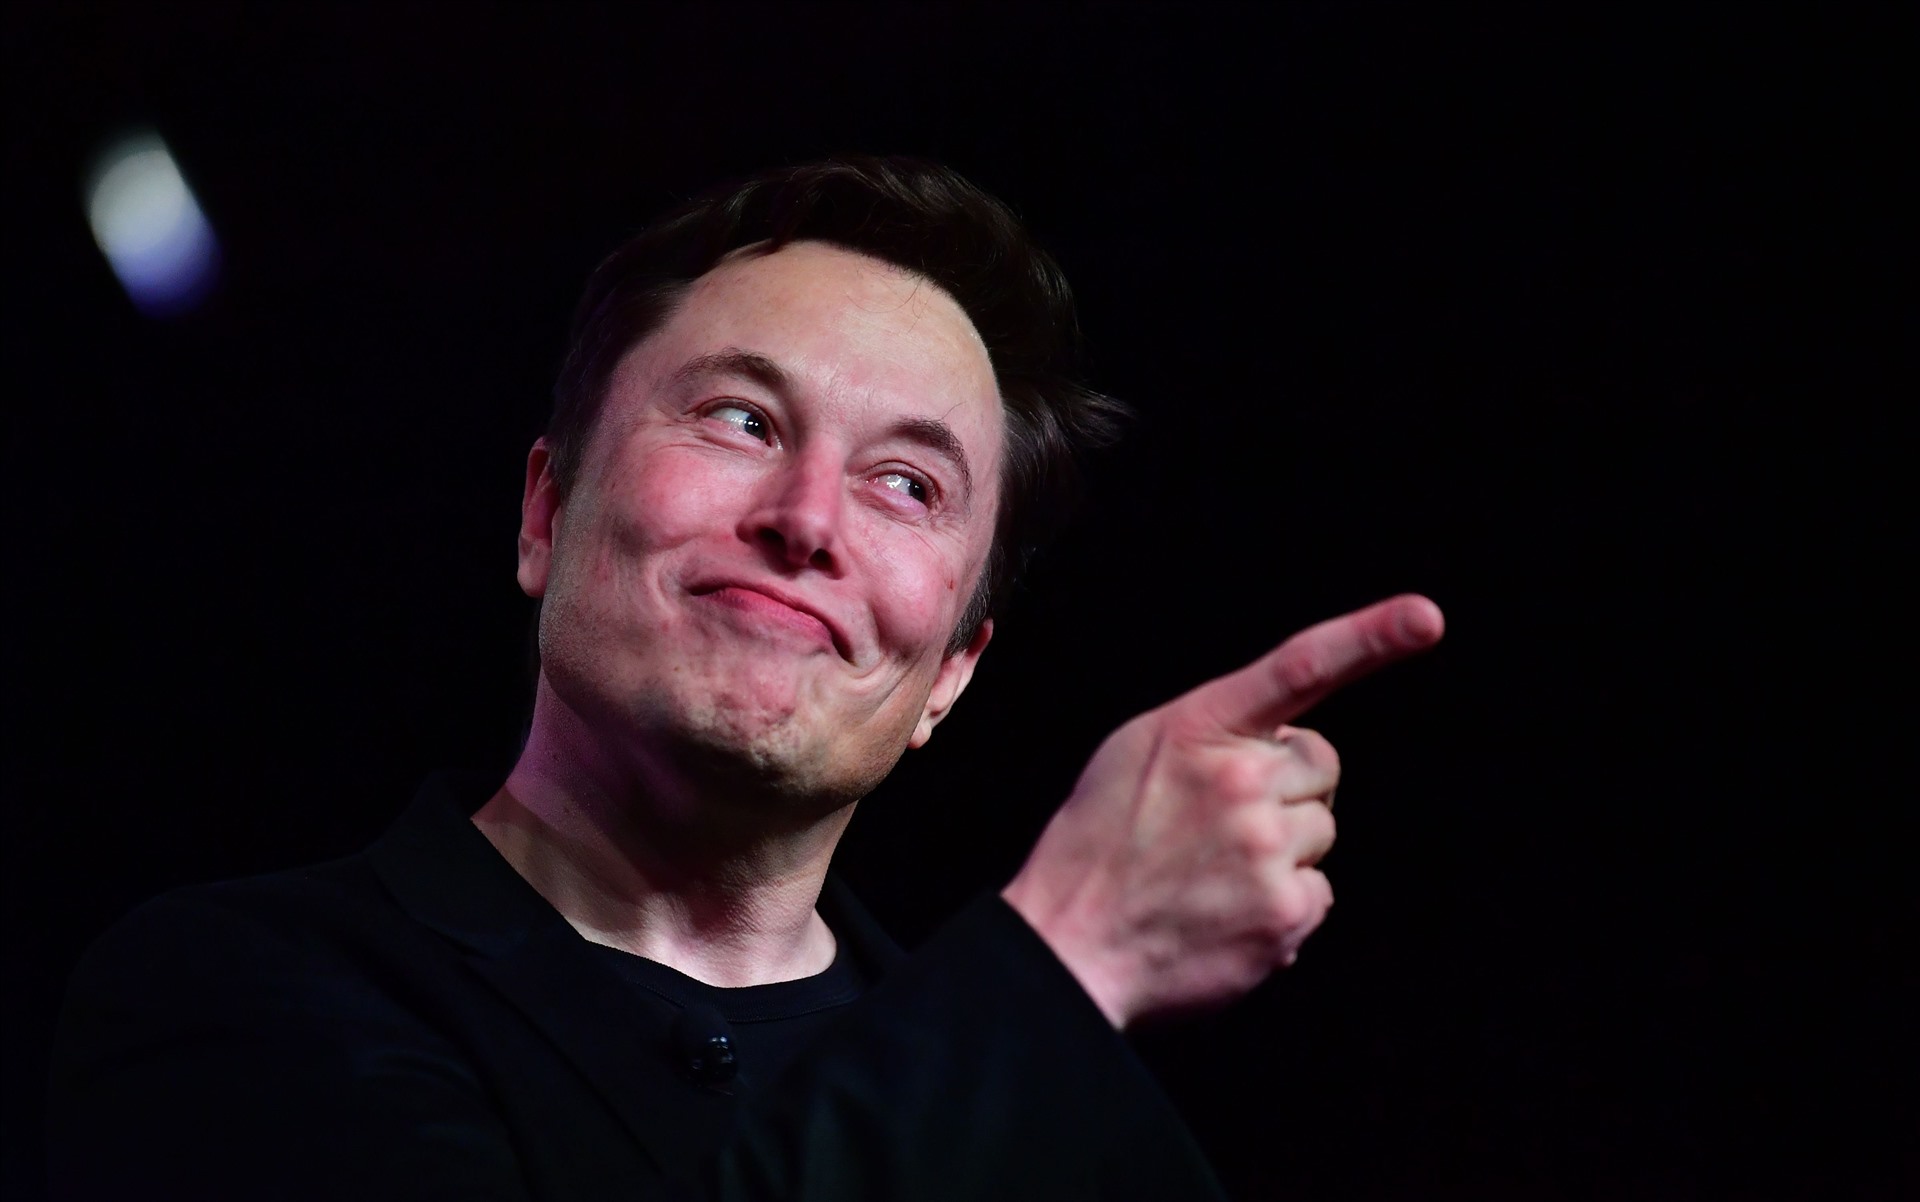 Tỉ phú công nghệ Elon Musk chia sẻ rằng công việc đầu tiên của ông là lau chùi, dọn dẹp tại một xưởng gỗ với mức lương 18 USD/giờ. Hiện ông đang có 33,3 tỉ USD. Ảnh: ST